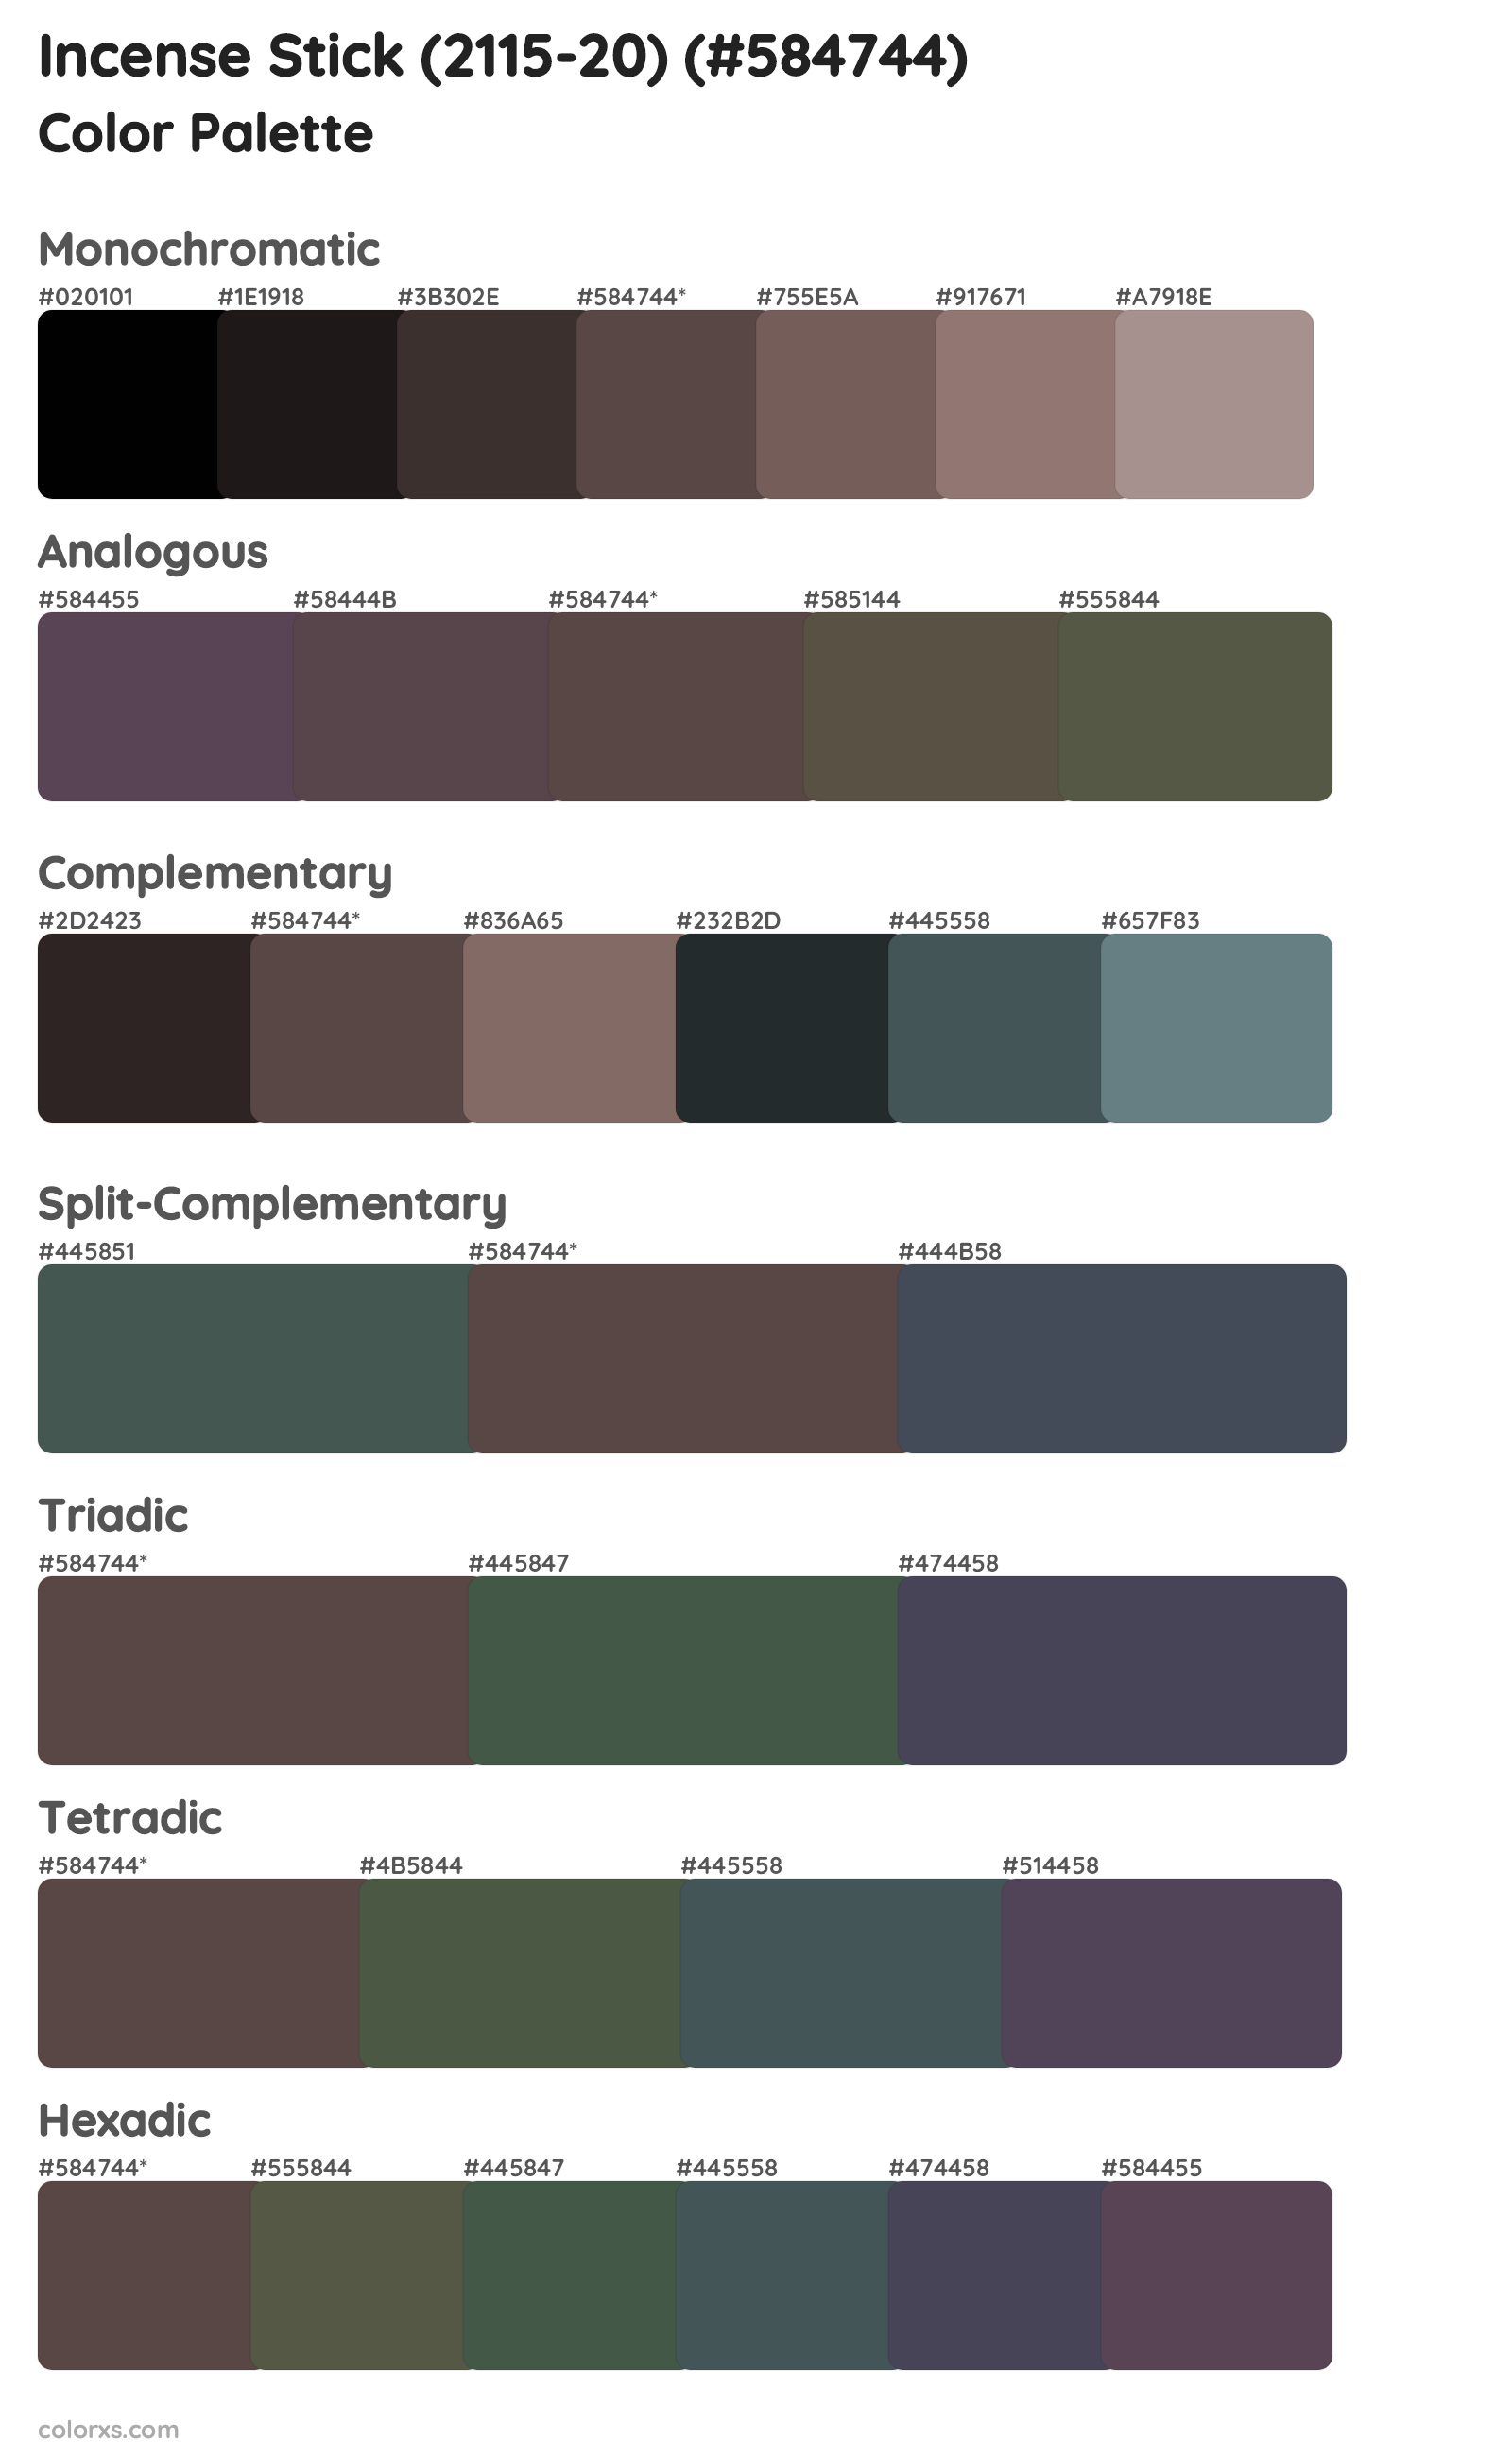 Incense Stick (2115-20) Color Scheme Palettes